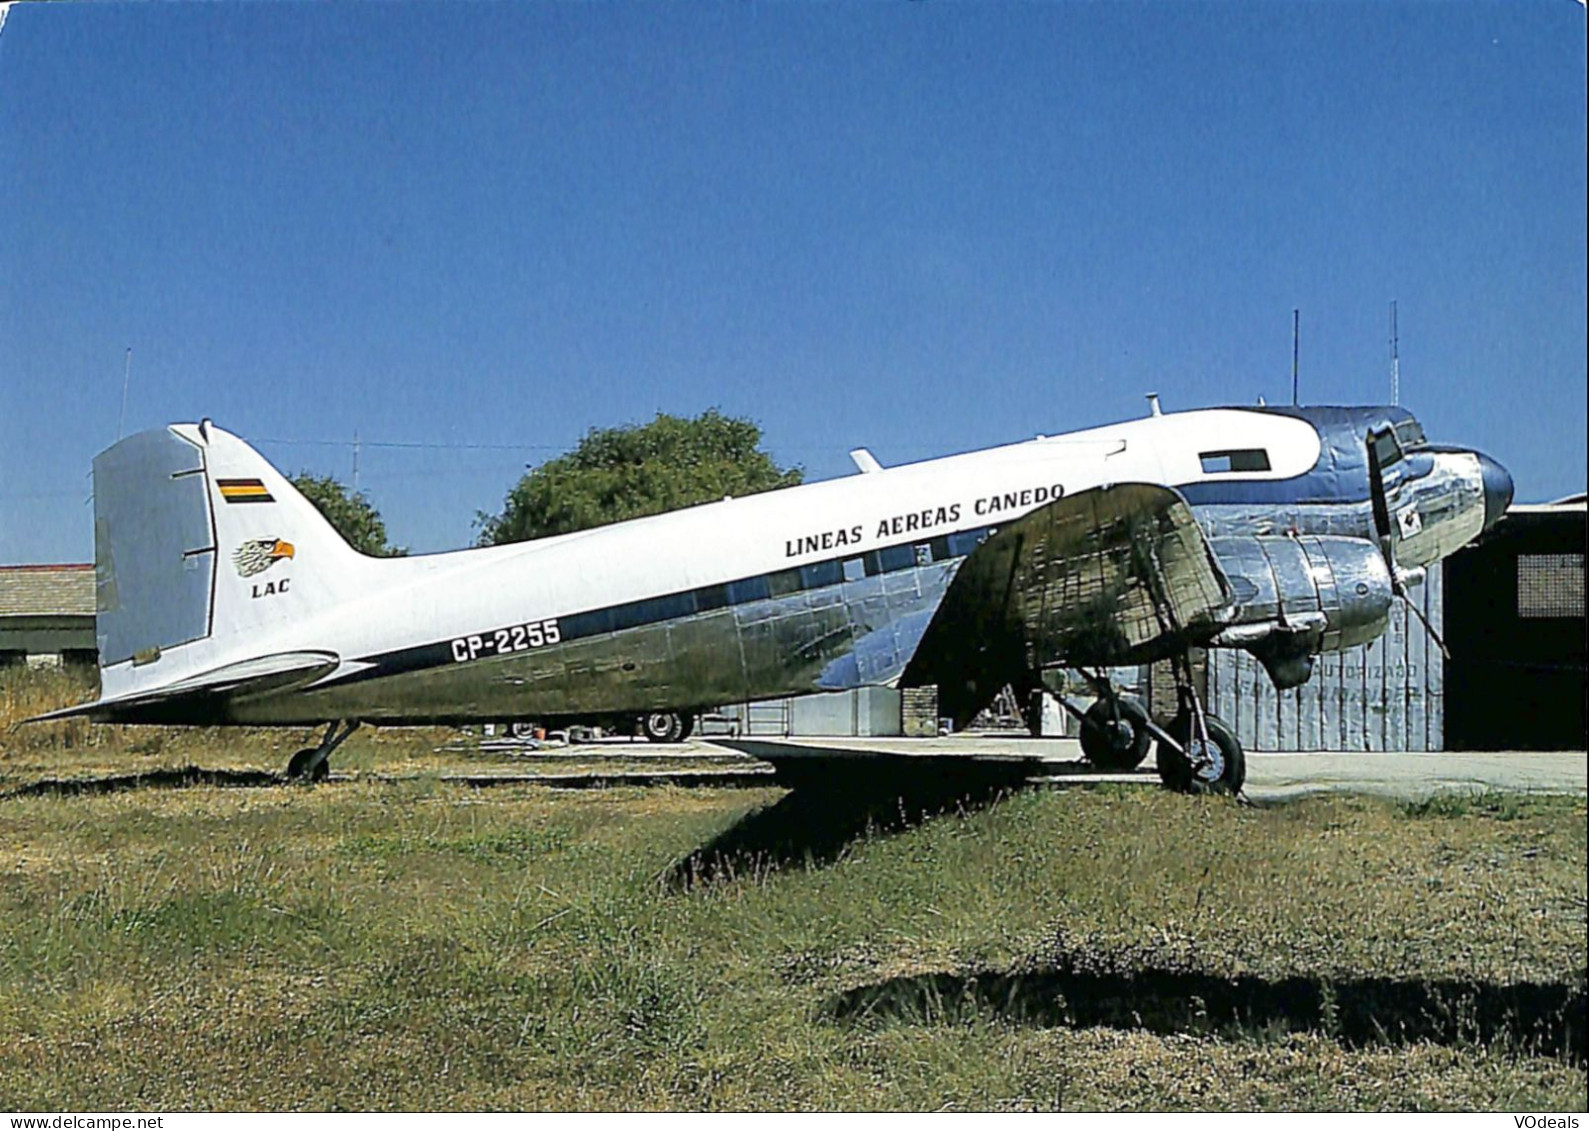 Belgique - Transports - Aviation - Avions - Lineas Aereas Canedo - DC-3C - CP-2255 - 1946-....: Moderne